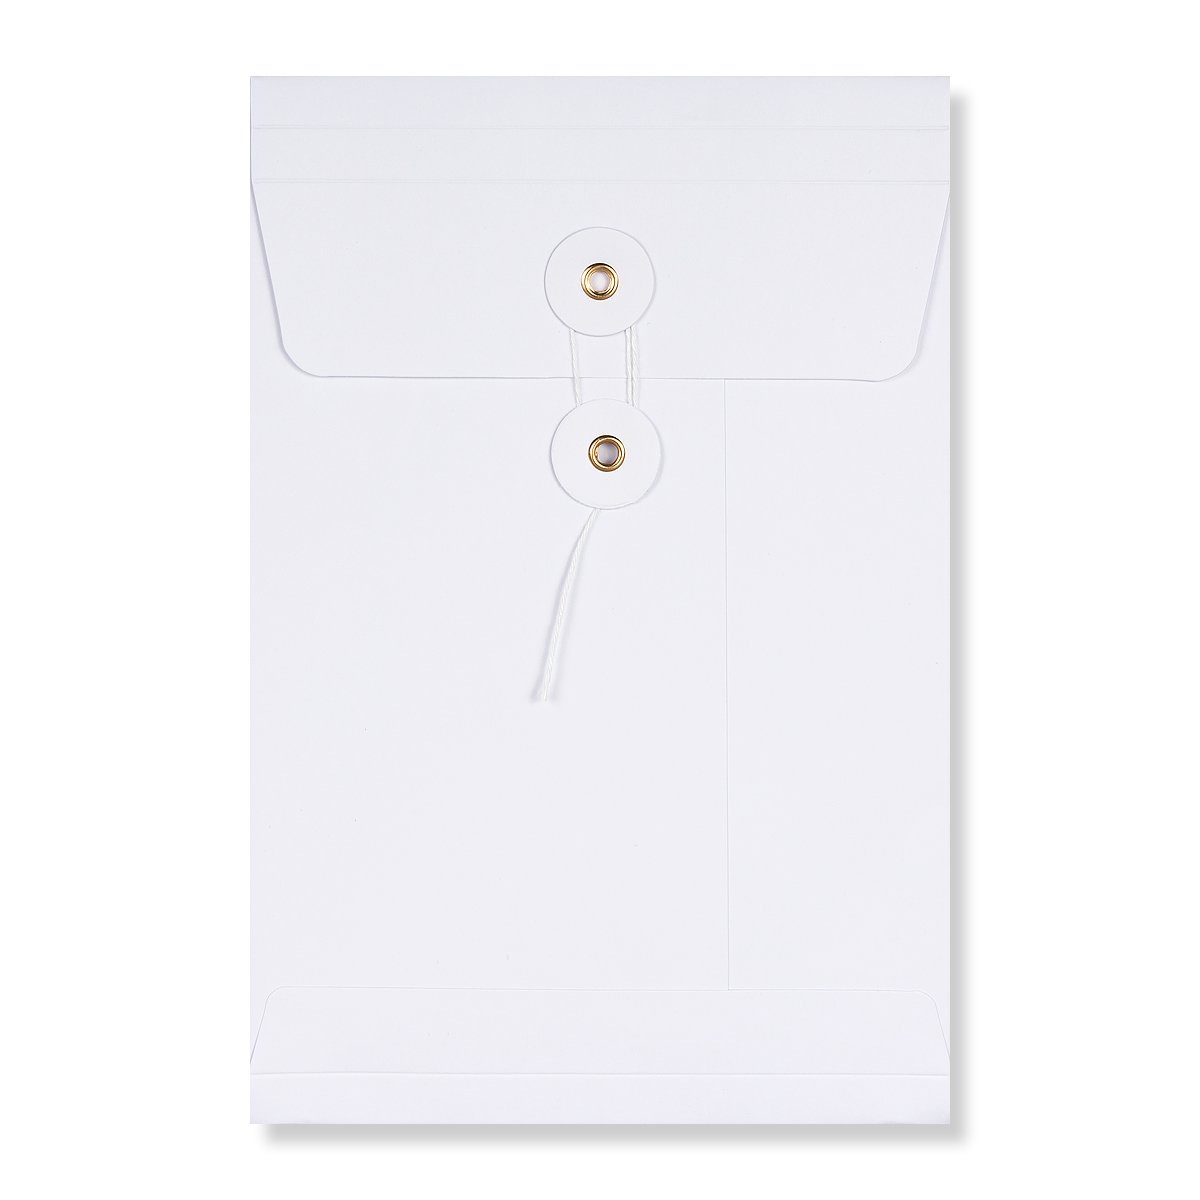 200 x A4 Plain Document Enclosed Wallets Envelopes C4